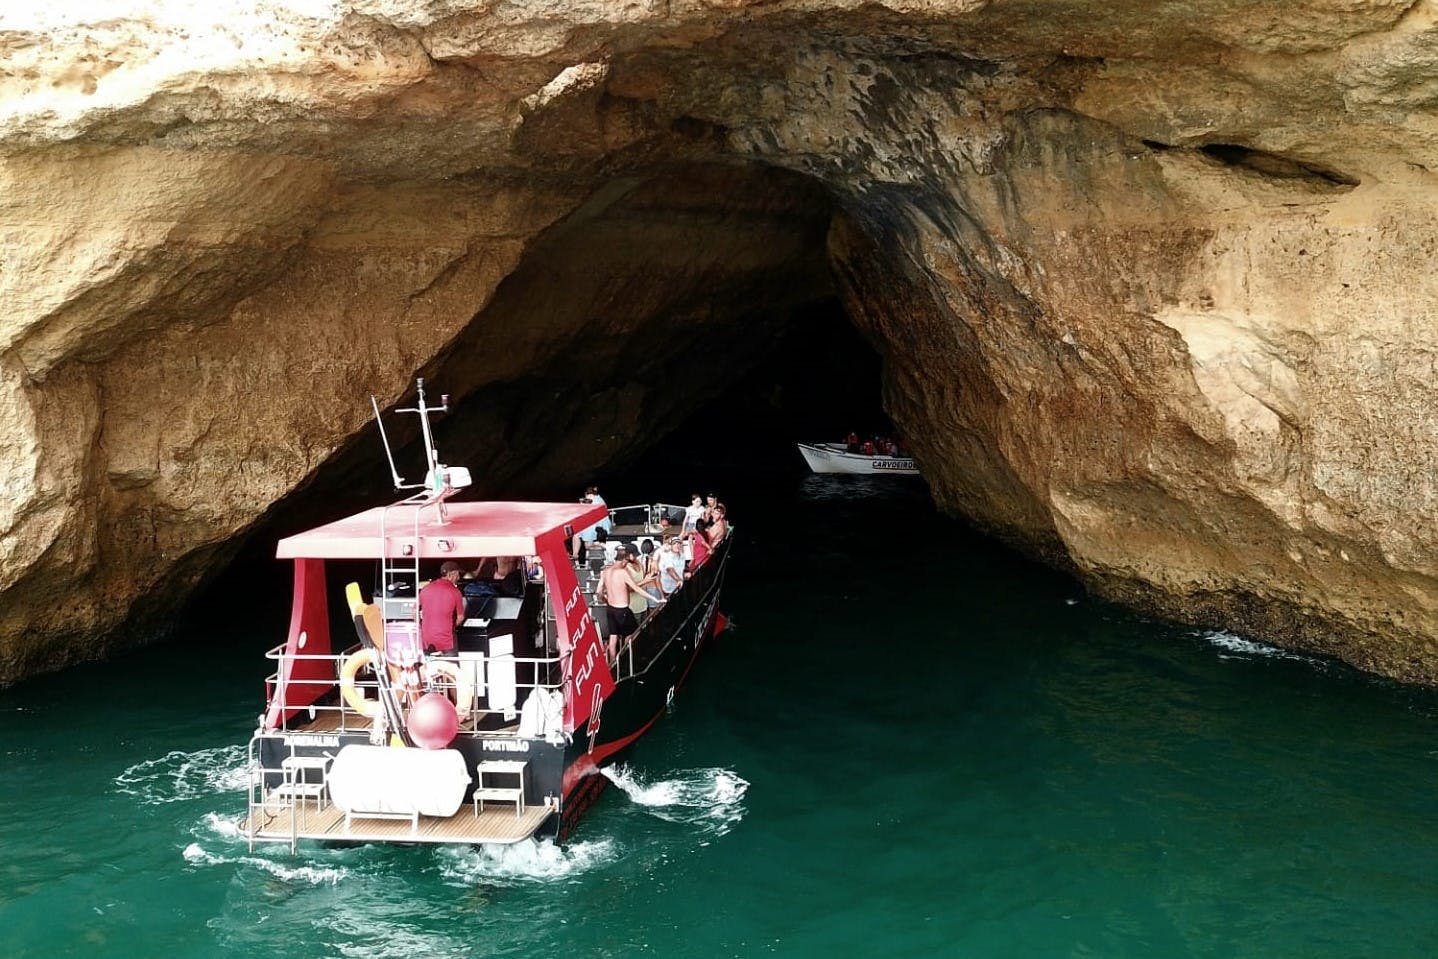 Family catamaran tour to Benagil Caves from Portimão